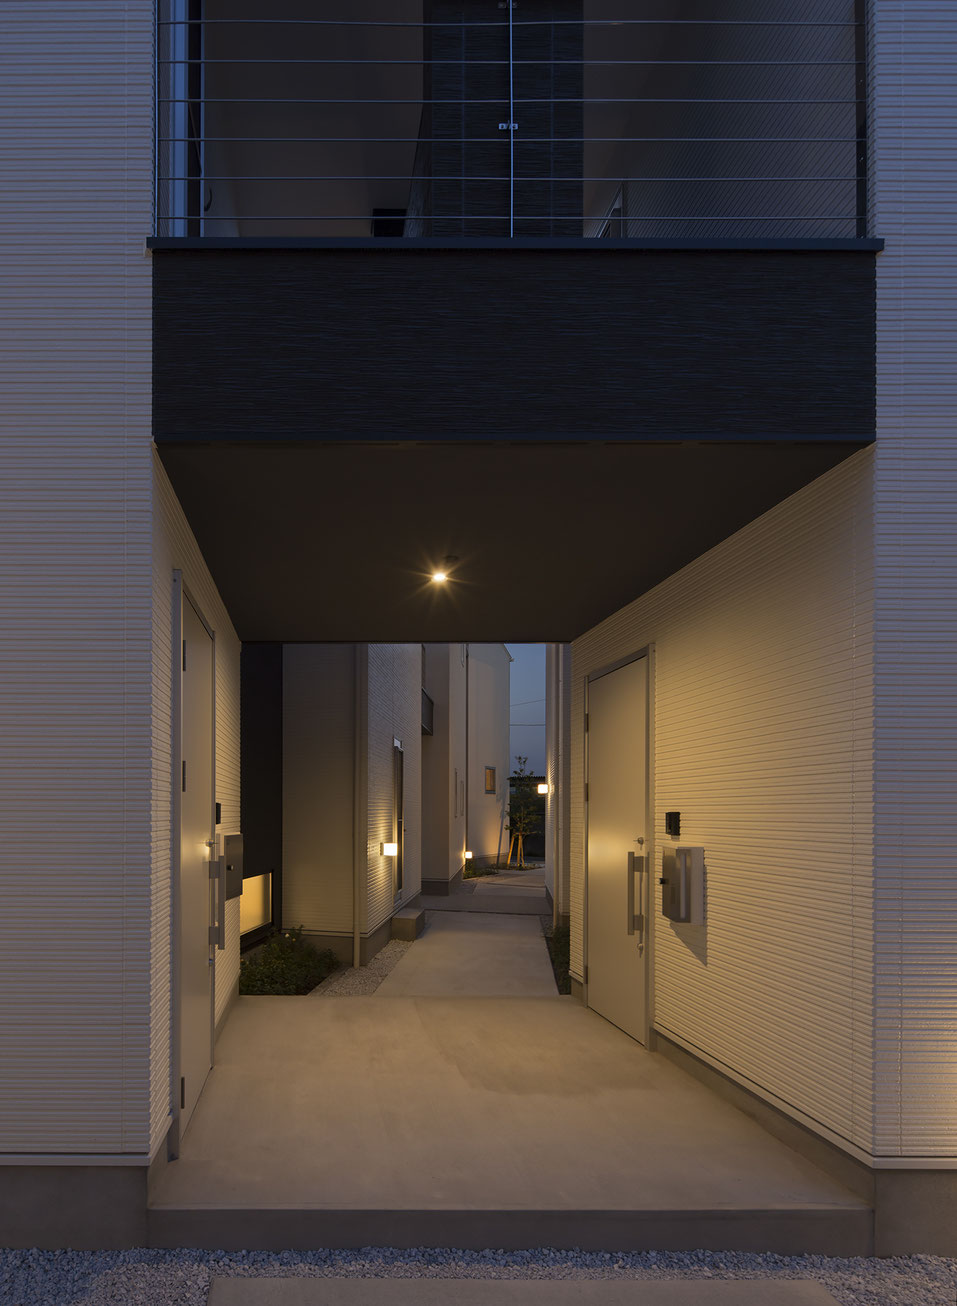 角建築研究室(代表 角大輔 Daisuke Sumi)による福岡県飯塚市の新築木造アパート。各住戸の明かりが漏れる路地空間の夜景写真。